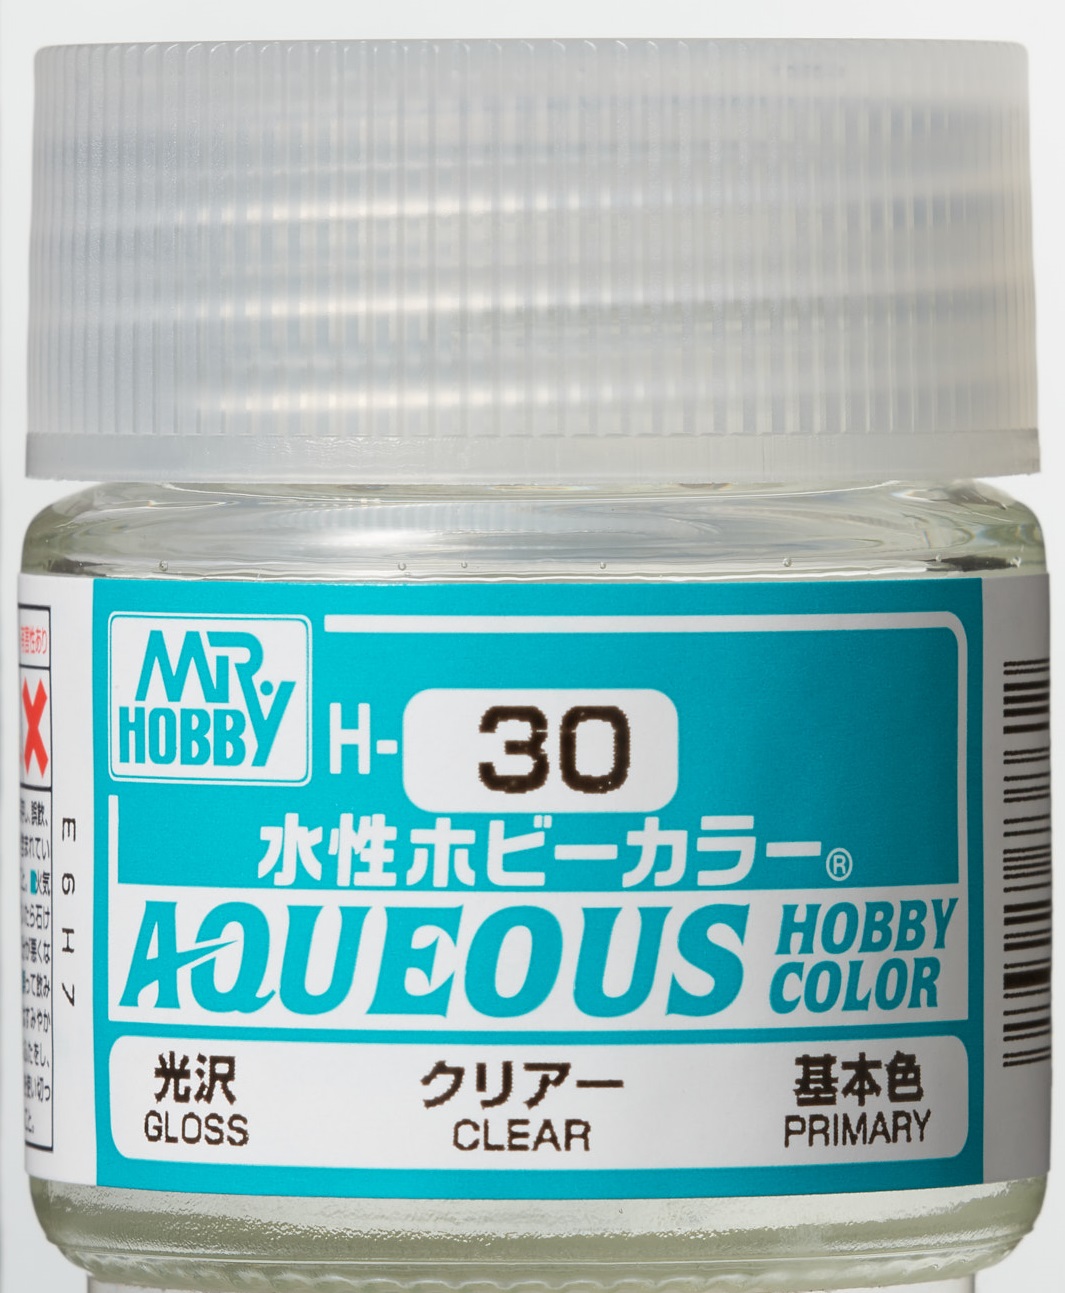 Mr. Aqueous Hobby Color - Gloss Clear - H30 - Glänzendes Klarlack